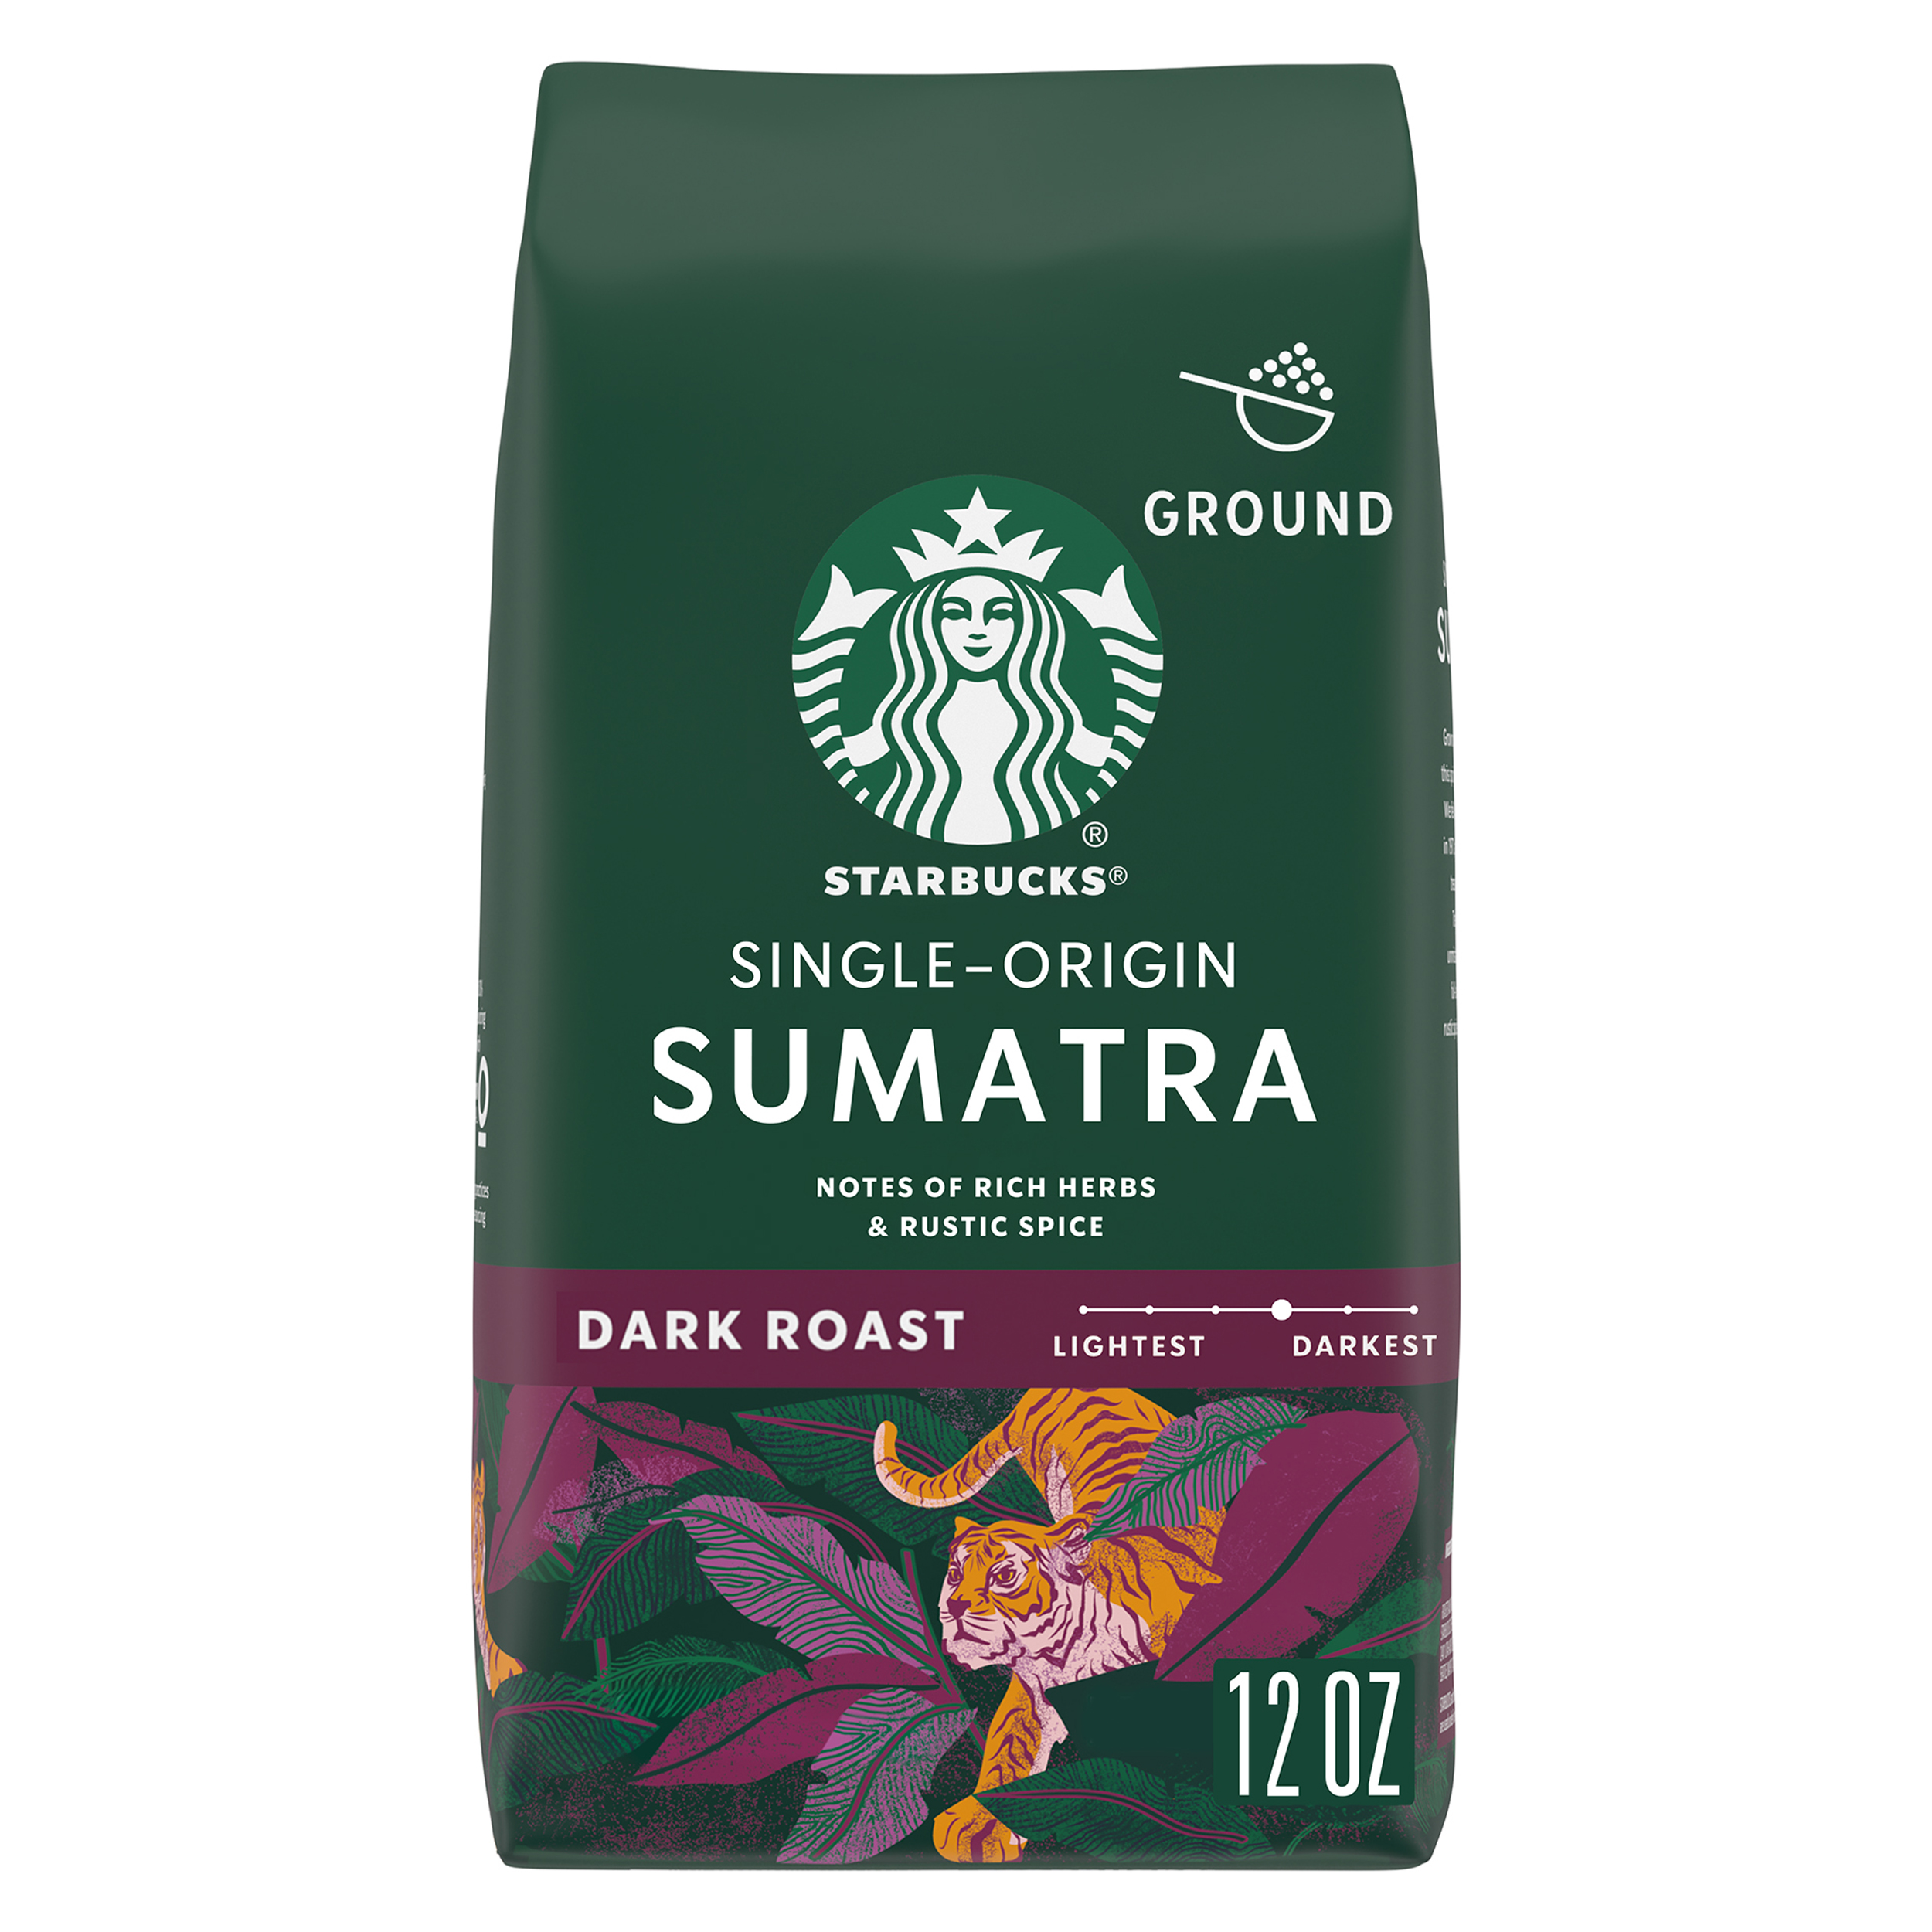 Starbucks Sumatra, Ground Coffee, Dark Roast, 12 oz - image 1 of 8